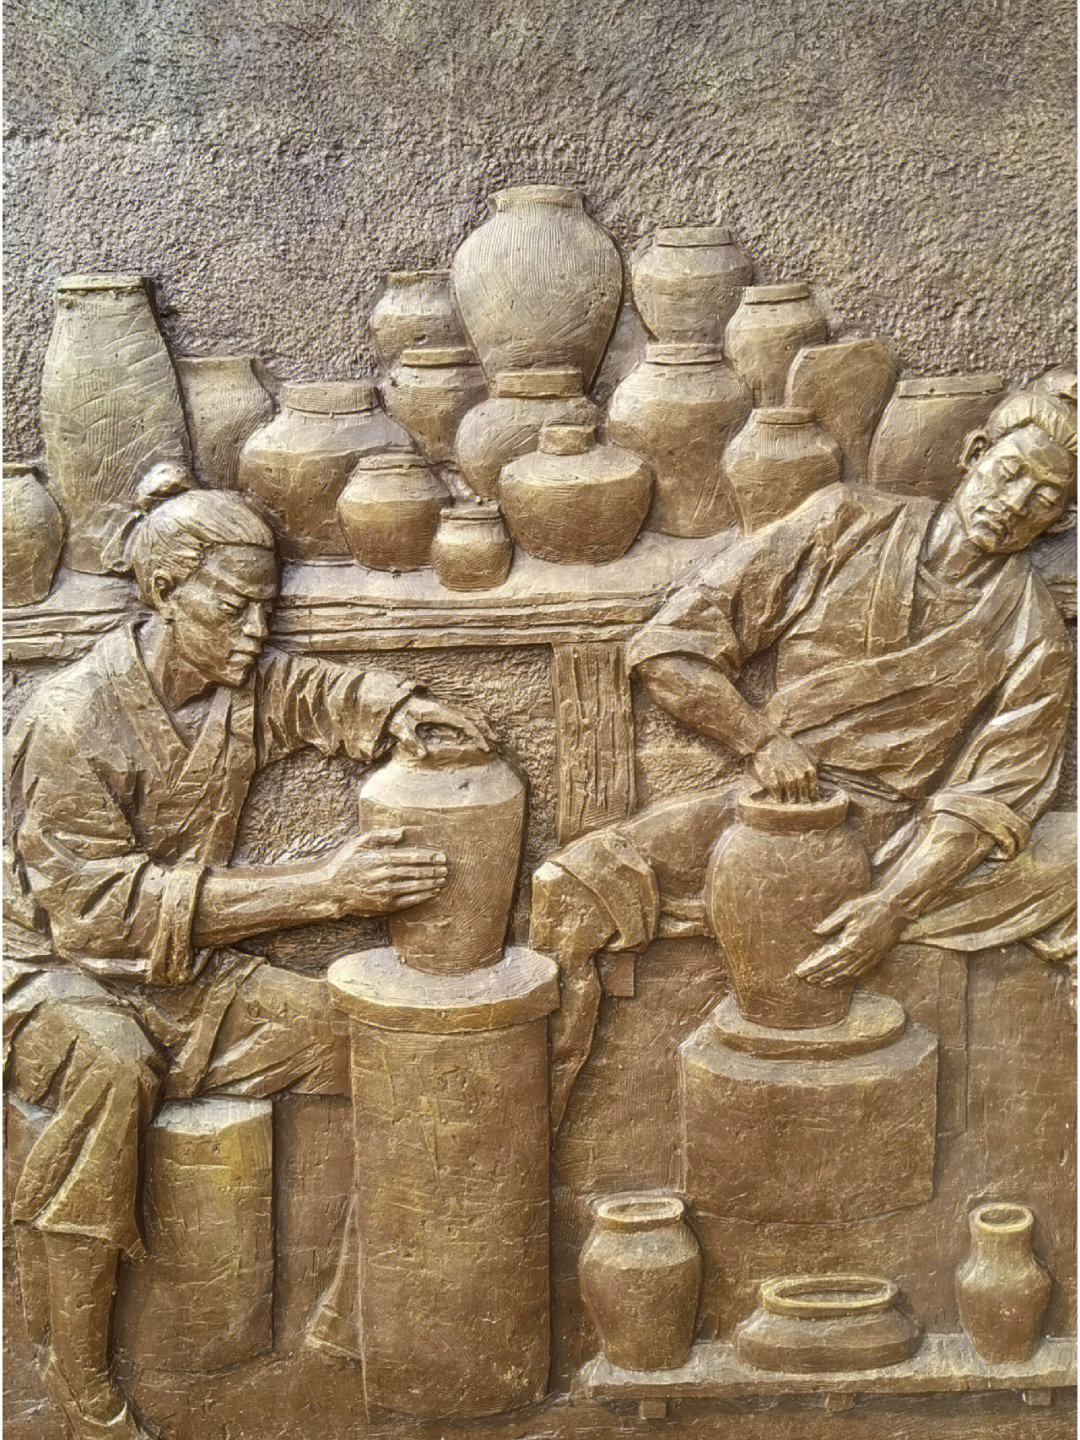 【成都西河:非遗特色土陶文化有传承】具有悠久的制陶历史,成都石板